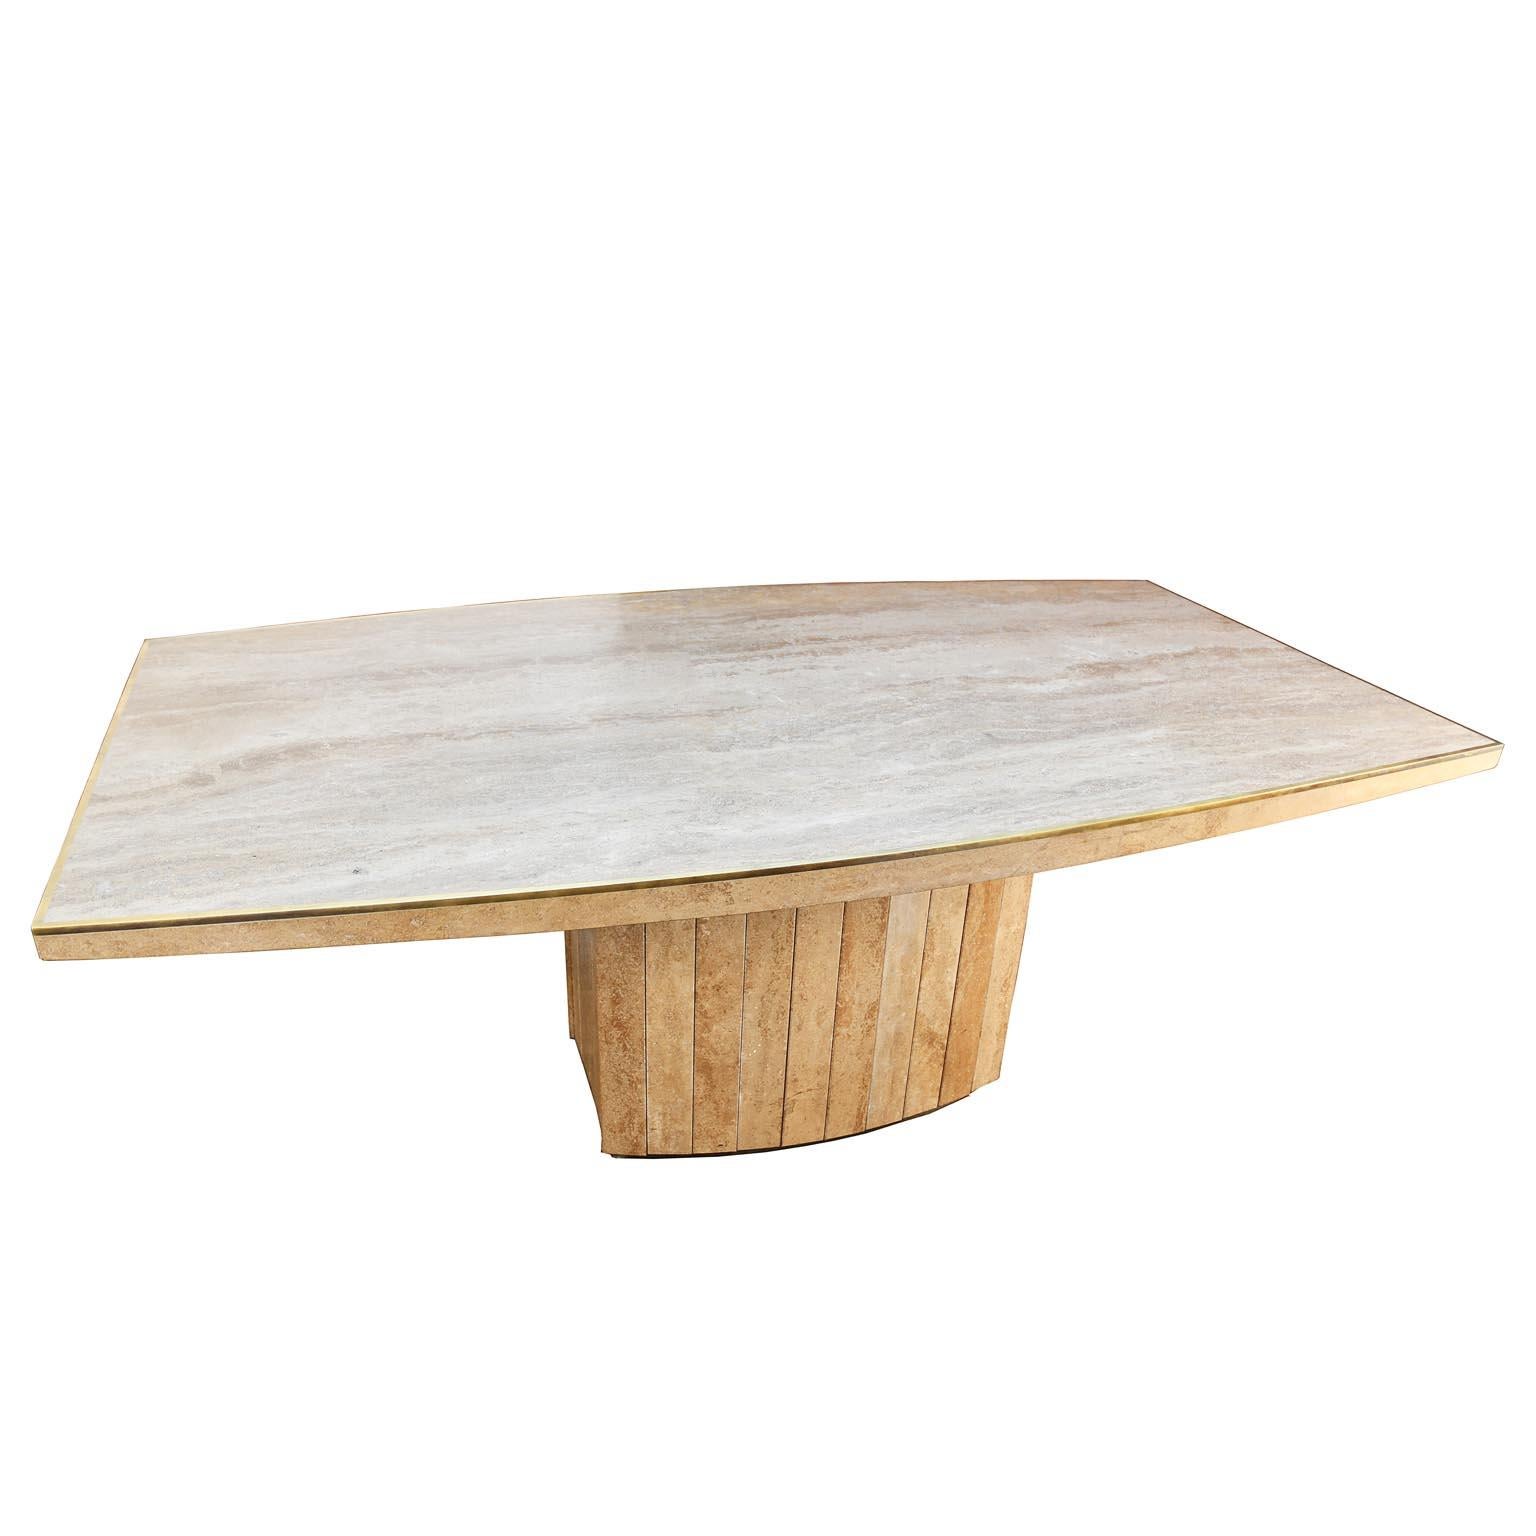 Esstisch entworfen von Willy Rizzo, entworfen von Jean Charles in den 1970er Jahren. Der Tisch ist aus Tarvertin gefertigt, die Platte ist ein Stück und mit einer eleganten Messingkante versehen.
Der Sockel besteht auch aus Tonplatten, deren Form